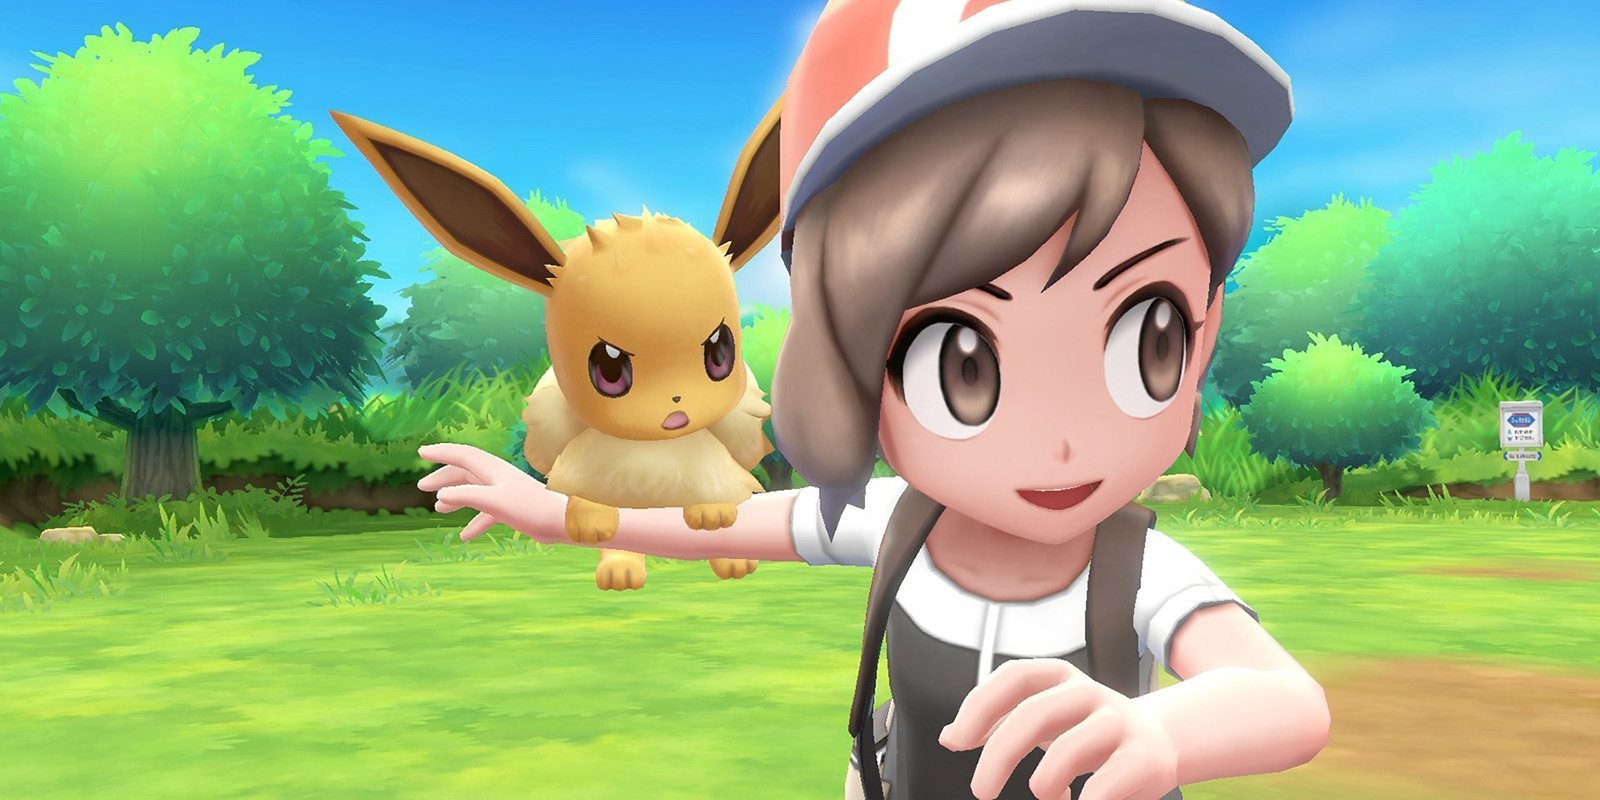 Los nuevos 'Pokémon' clásicos llegarán finalmente a finales de 2019